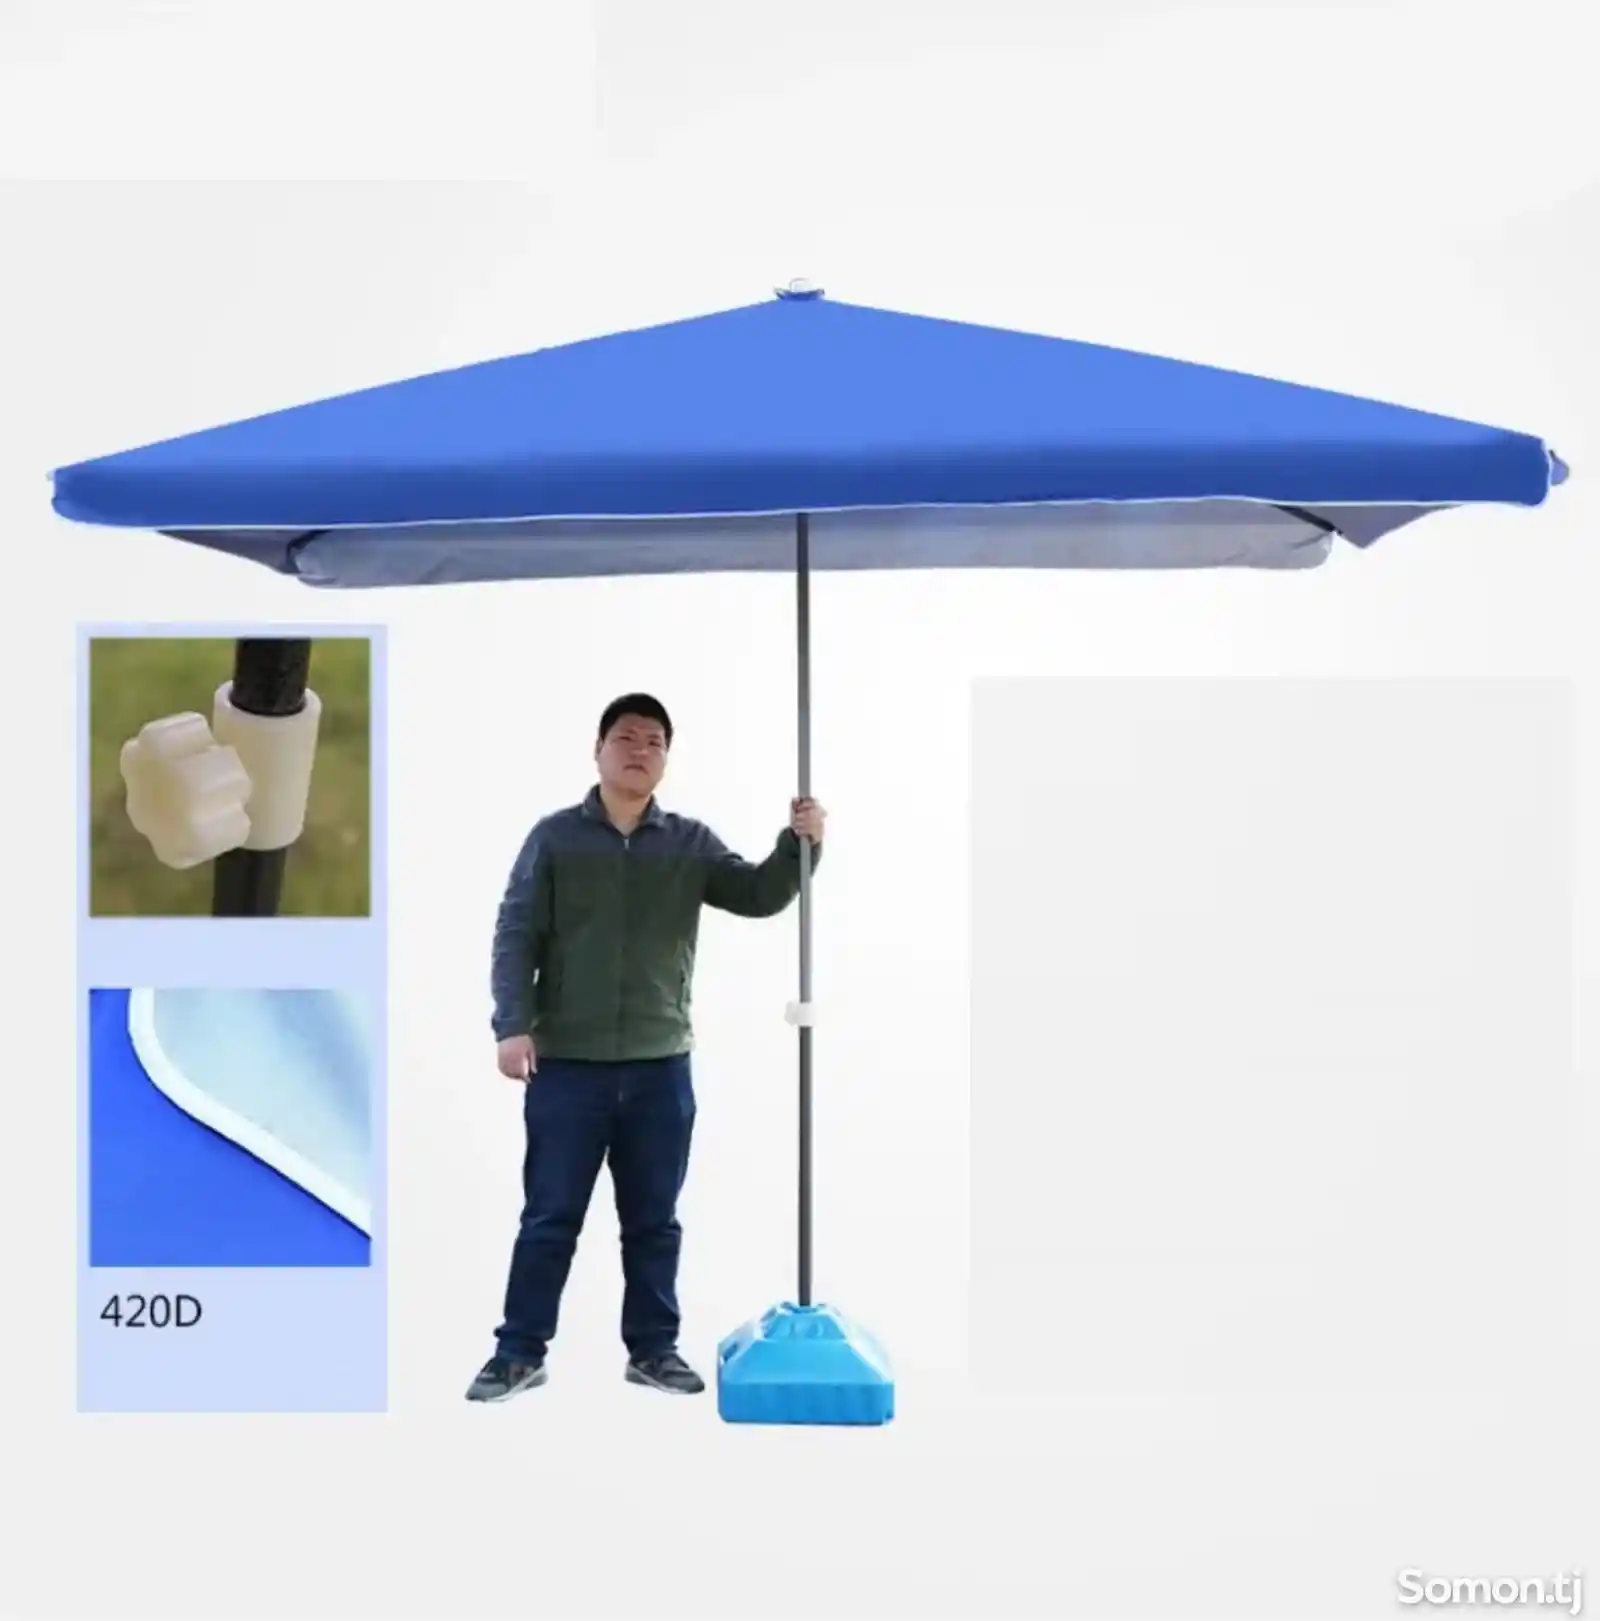 Зонтик шатер